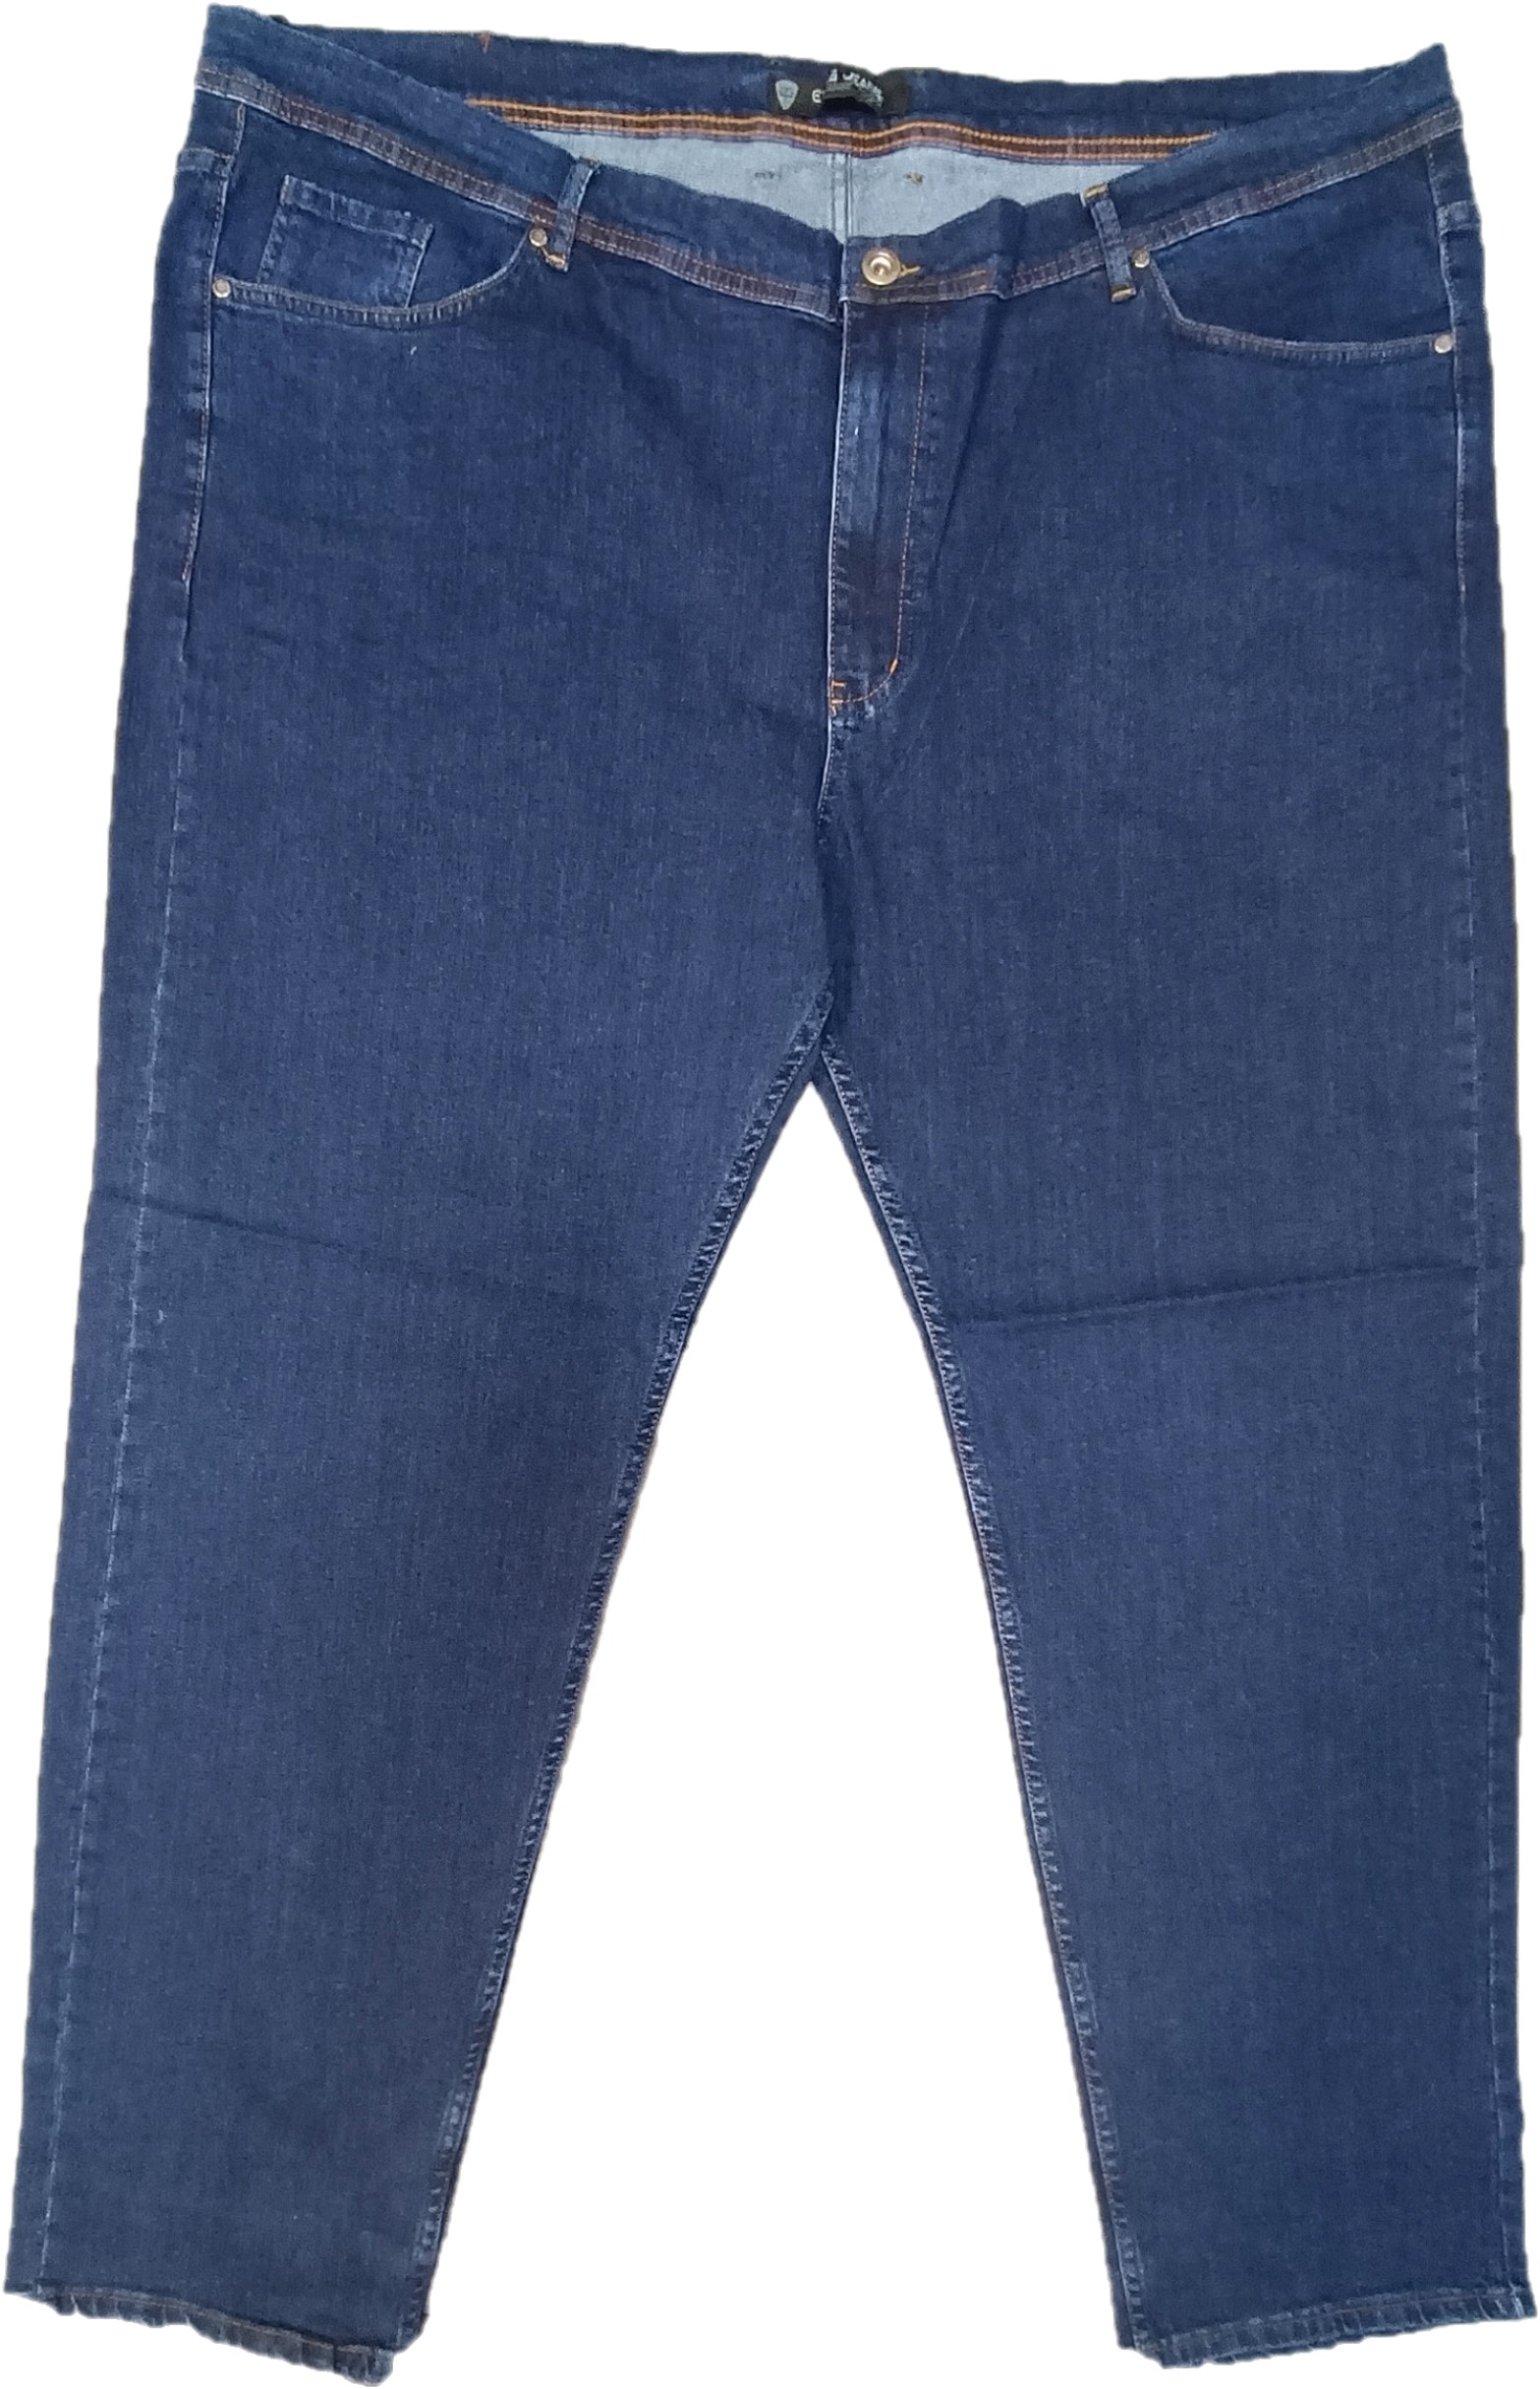 Джинсы мужские Epos Jeans 680055 синие 70 RU